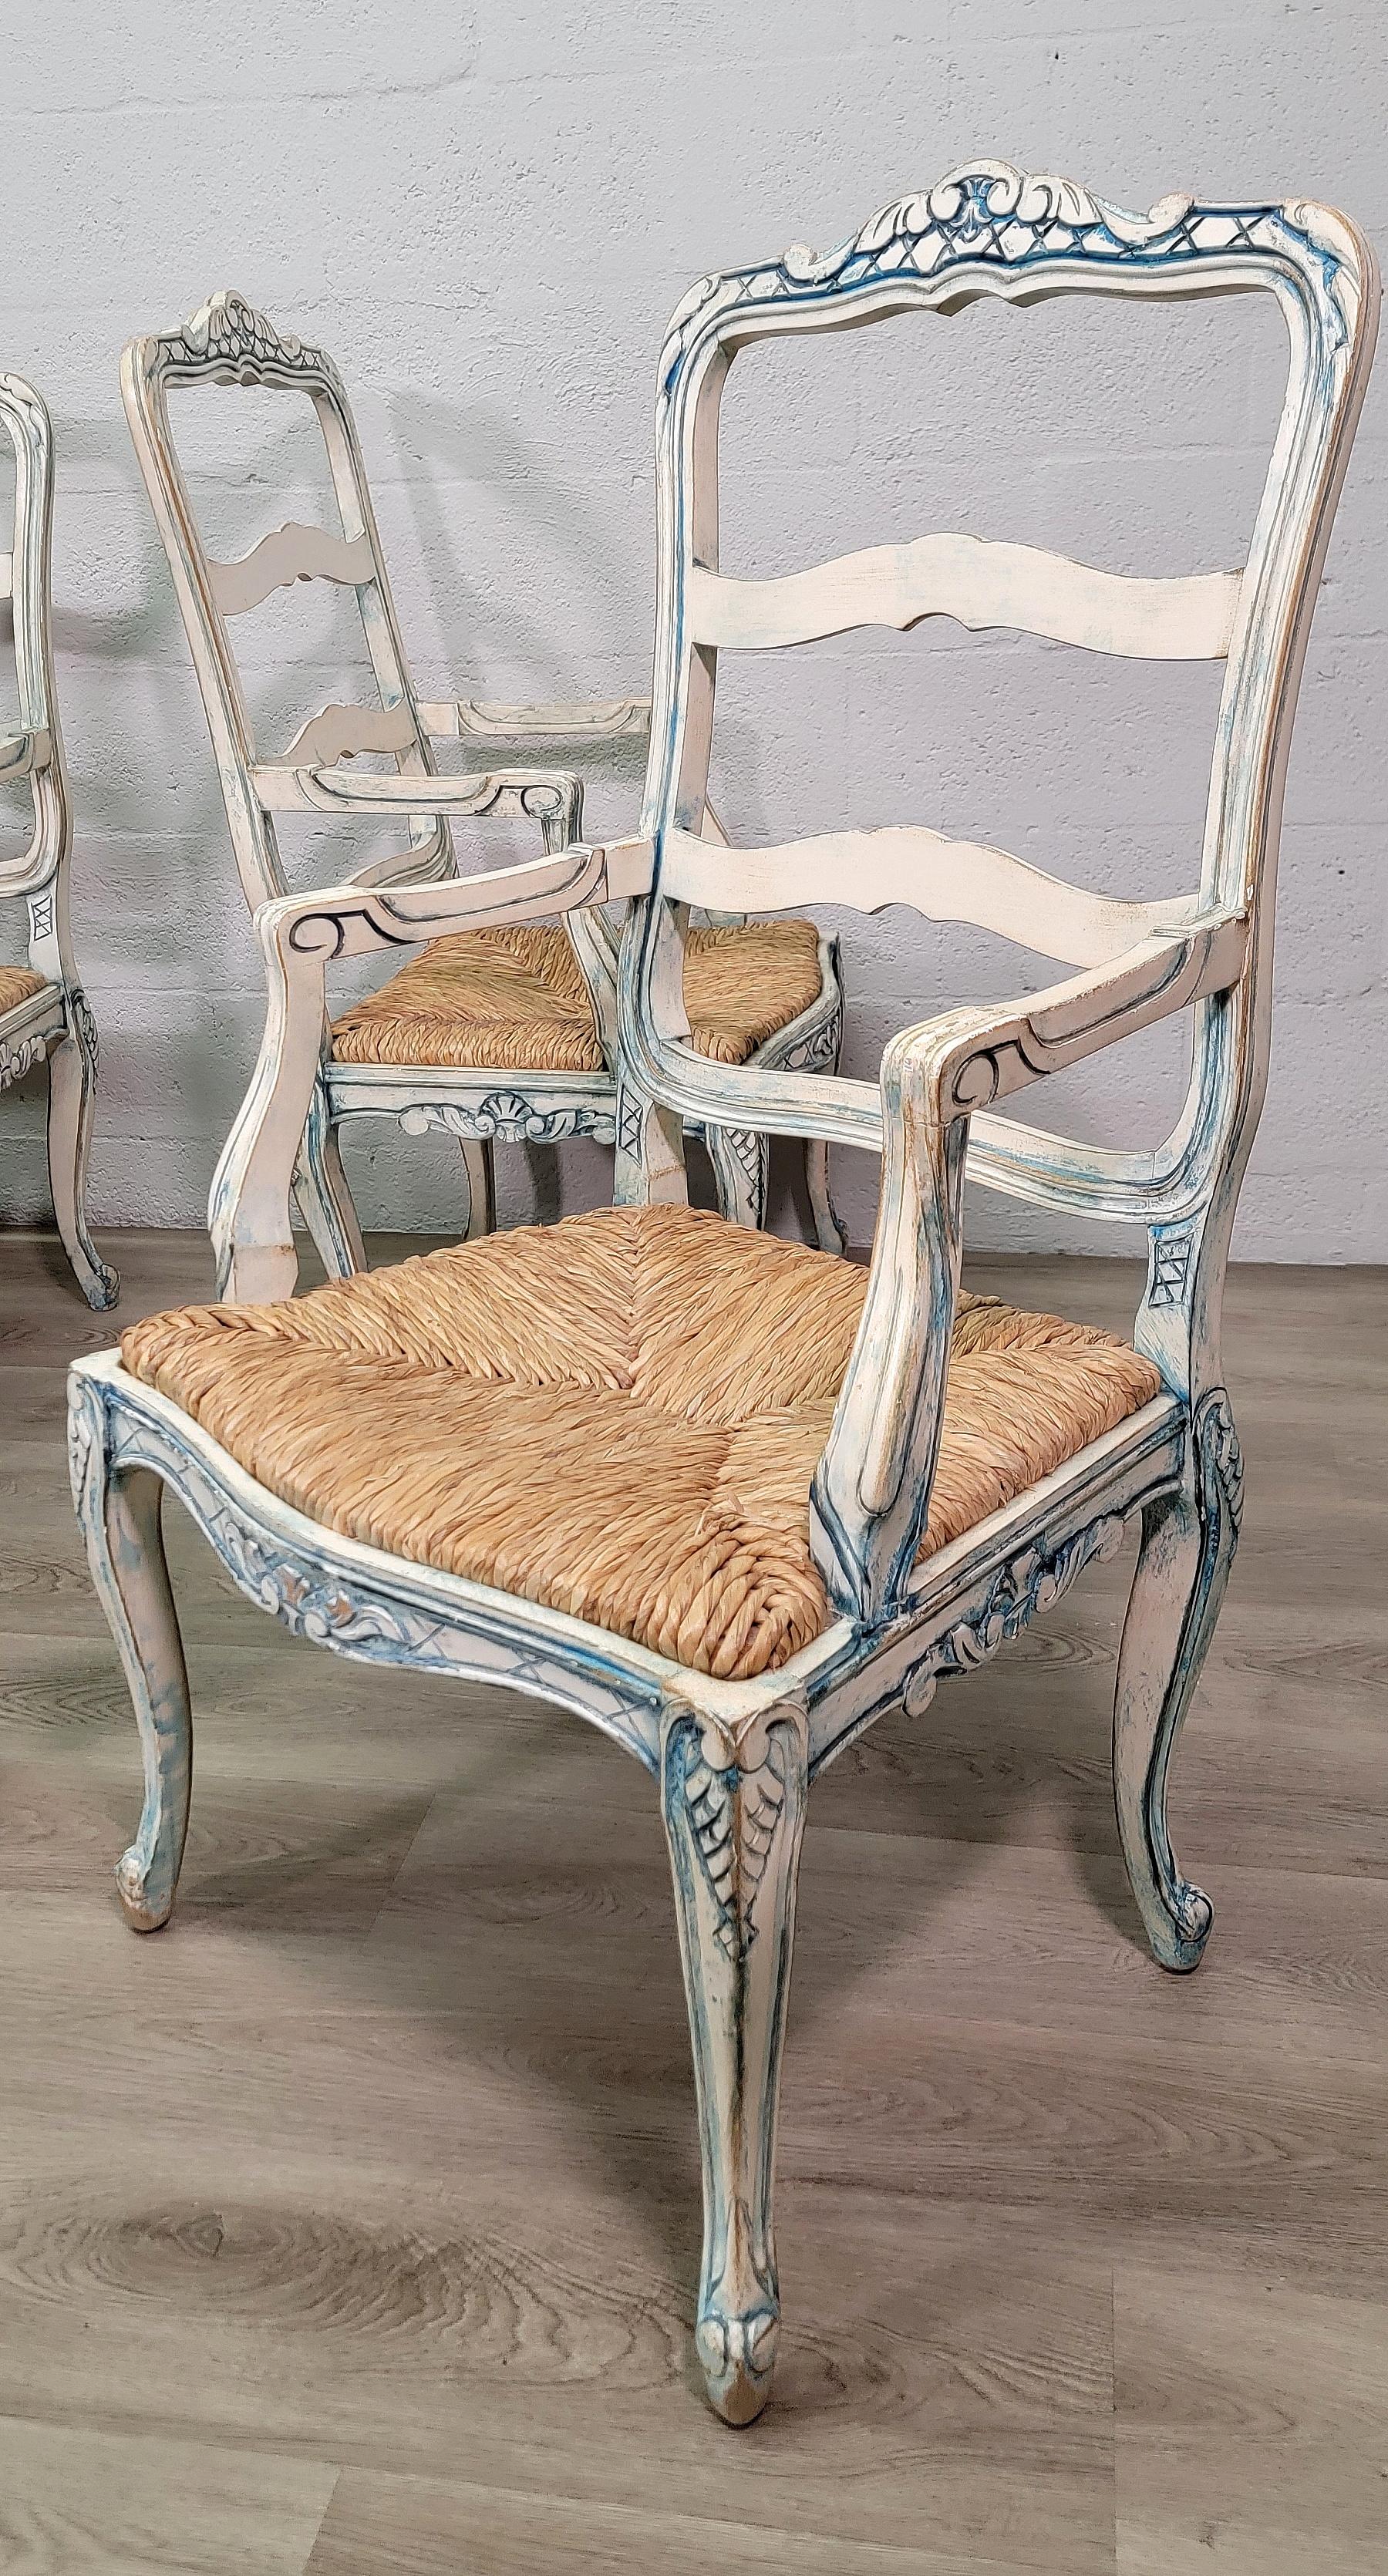 Ensemble de quatre fauteuils de salle à manger de style provincial Louis XV, peints en blanc et bleu, 20e siècle.
Elle repose sur quatre pieds cabriole et son assise est en jonc à la main.
Forme serpentine, cadre à dossier en échelle avec décor